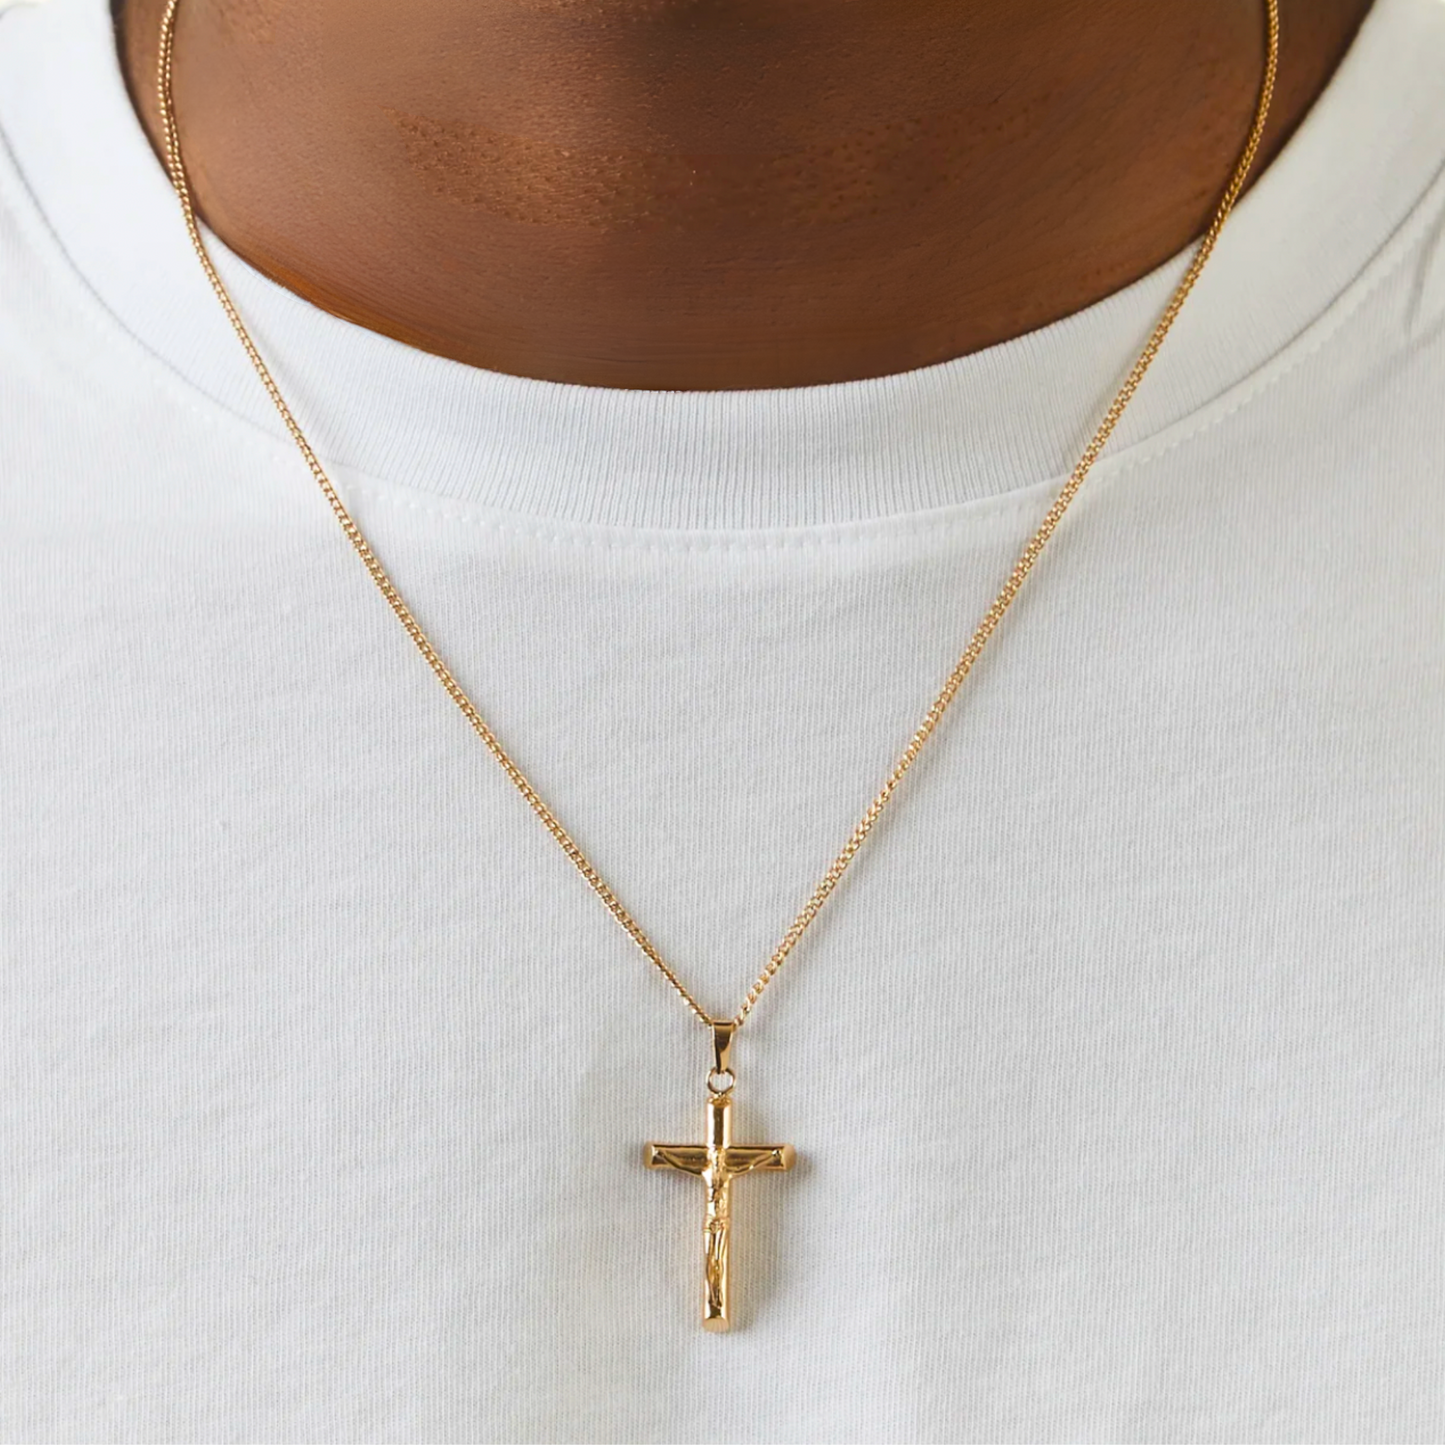 Crucifix Pendant Necklace (Gold)